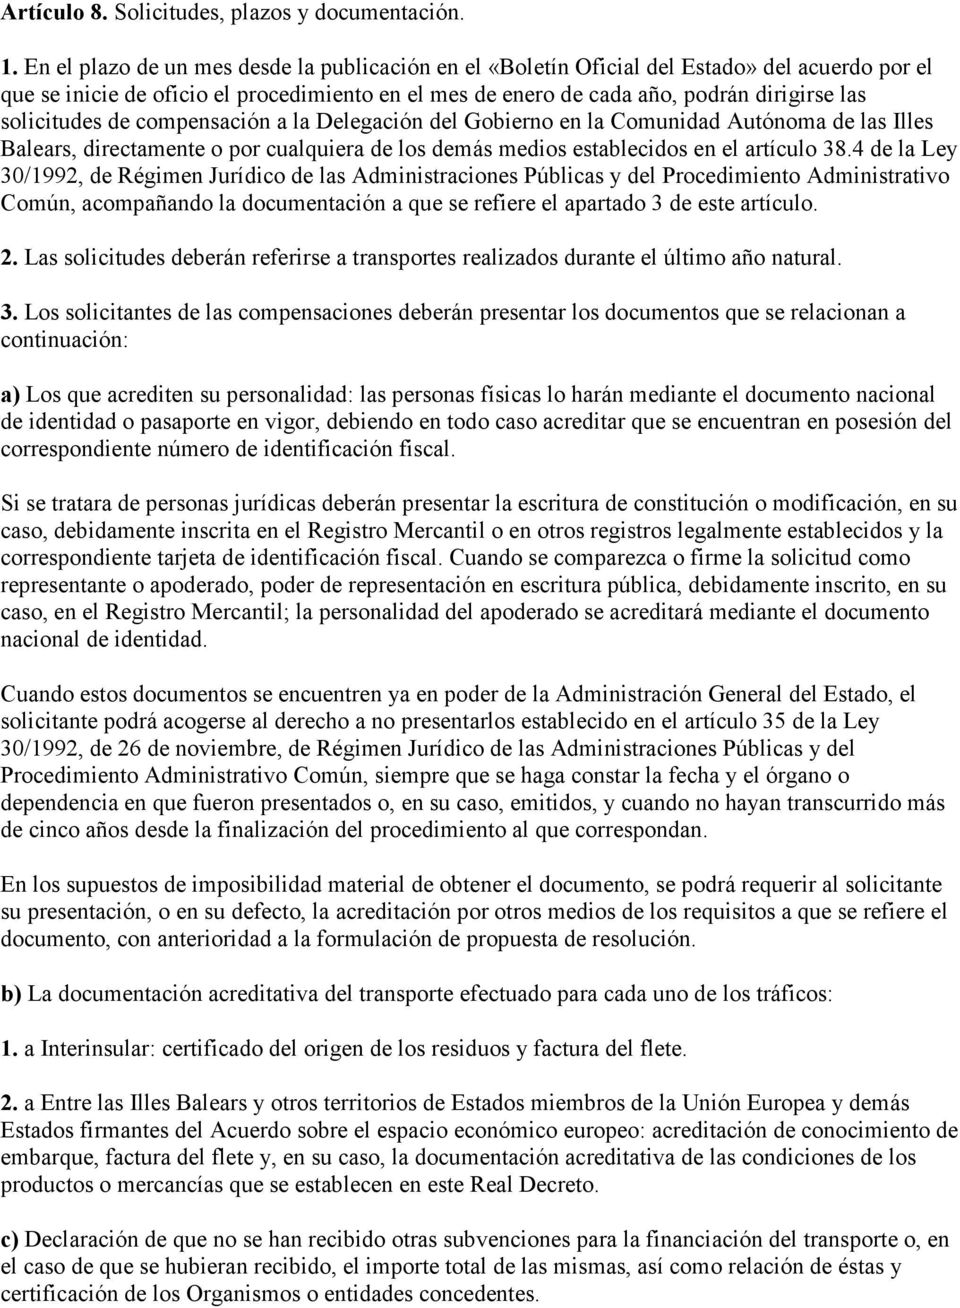 solicitudes de compensación a la Delegación del Gobierno en la Comunidad Autónoma de las Illes Balears, directamente o por cualquiera de los demás medios establecidos en el artículo 38.